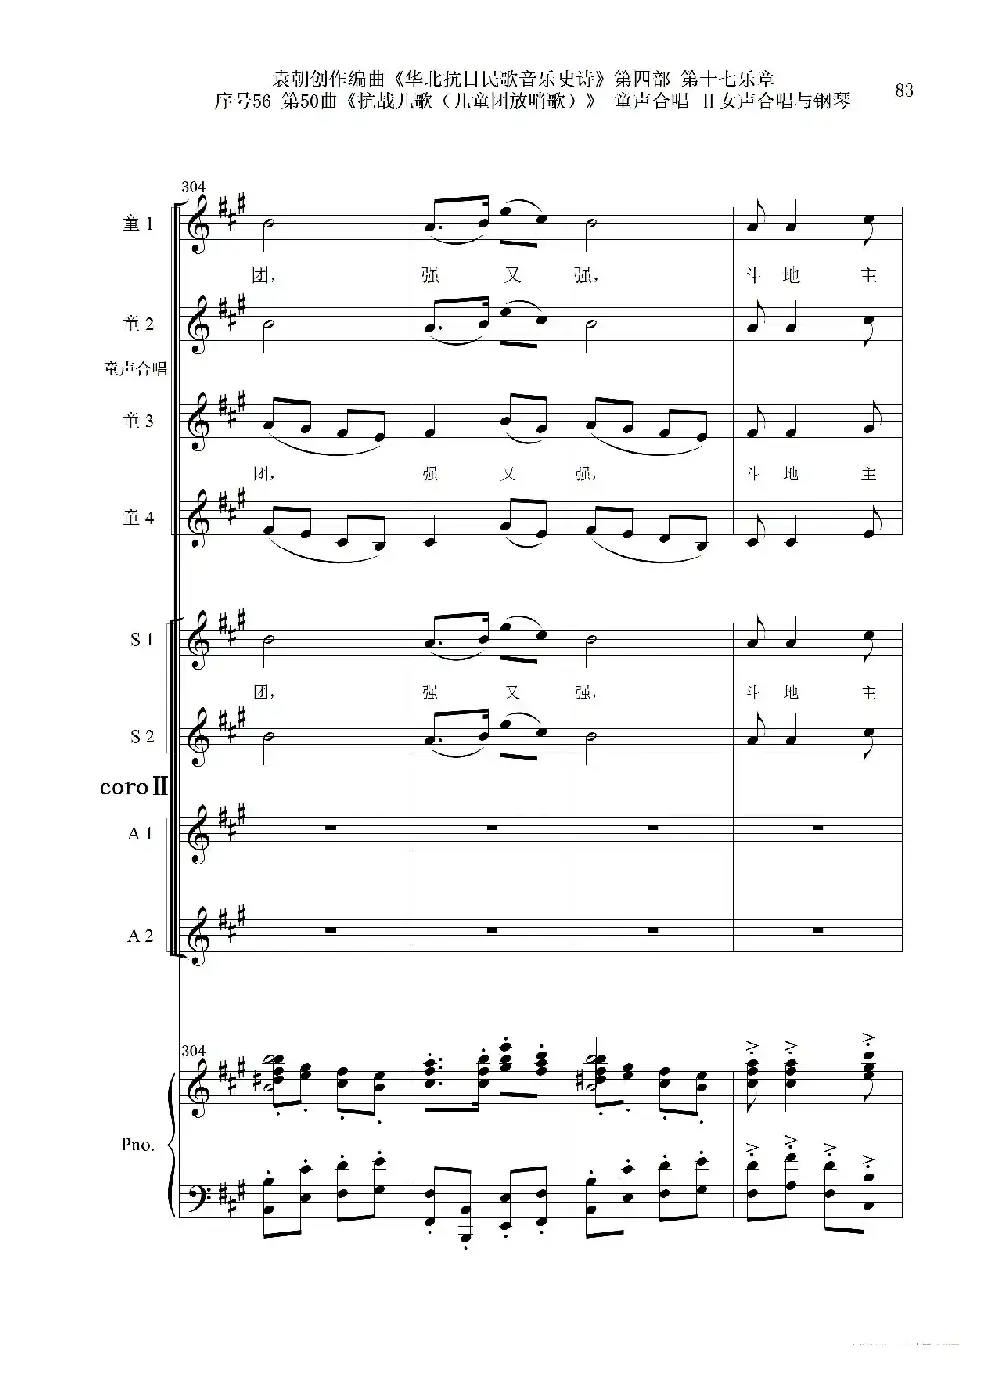 序号56第50曲《抗日儿歌（儿童团放哨歌）》童声合唱（或Ⅰ女声合唱代替）Ⅱ女声合唱与钢琴